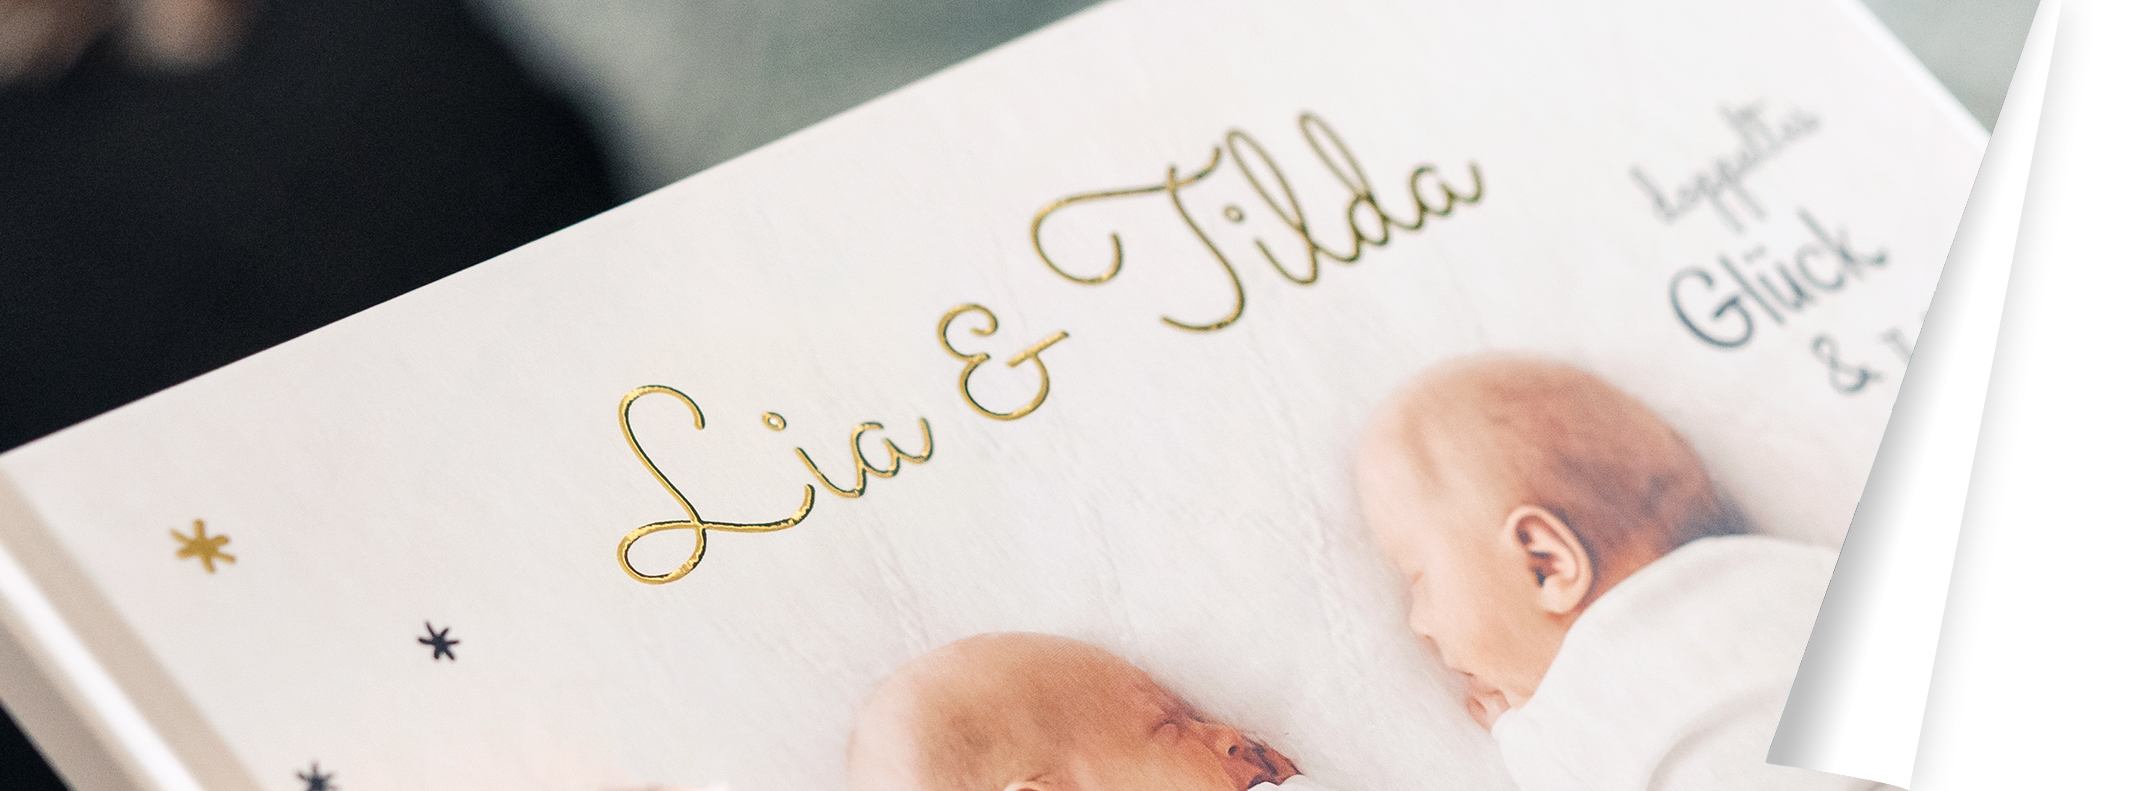 Titelbild des Fotobuchs, das Lia und Tilda zeigt. Ihre Namen stehen in einem goldenen Schriftzug.